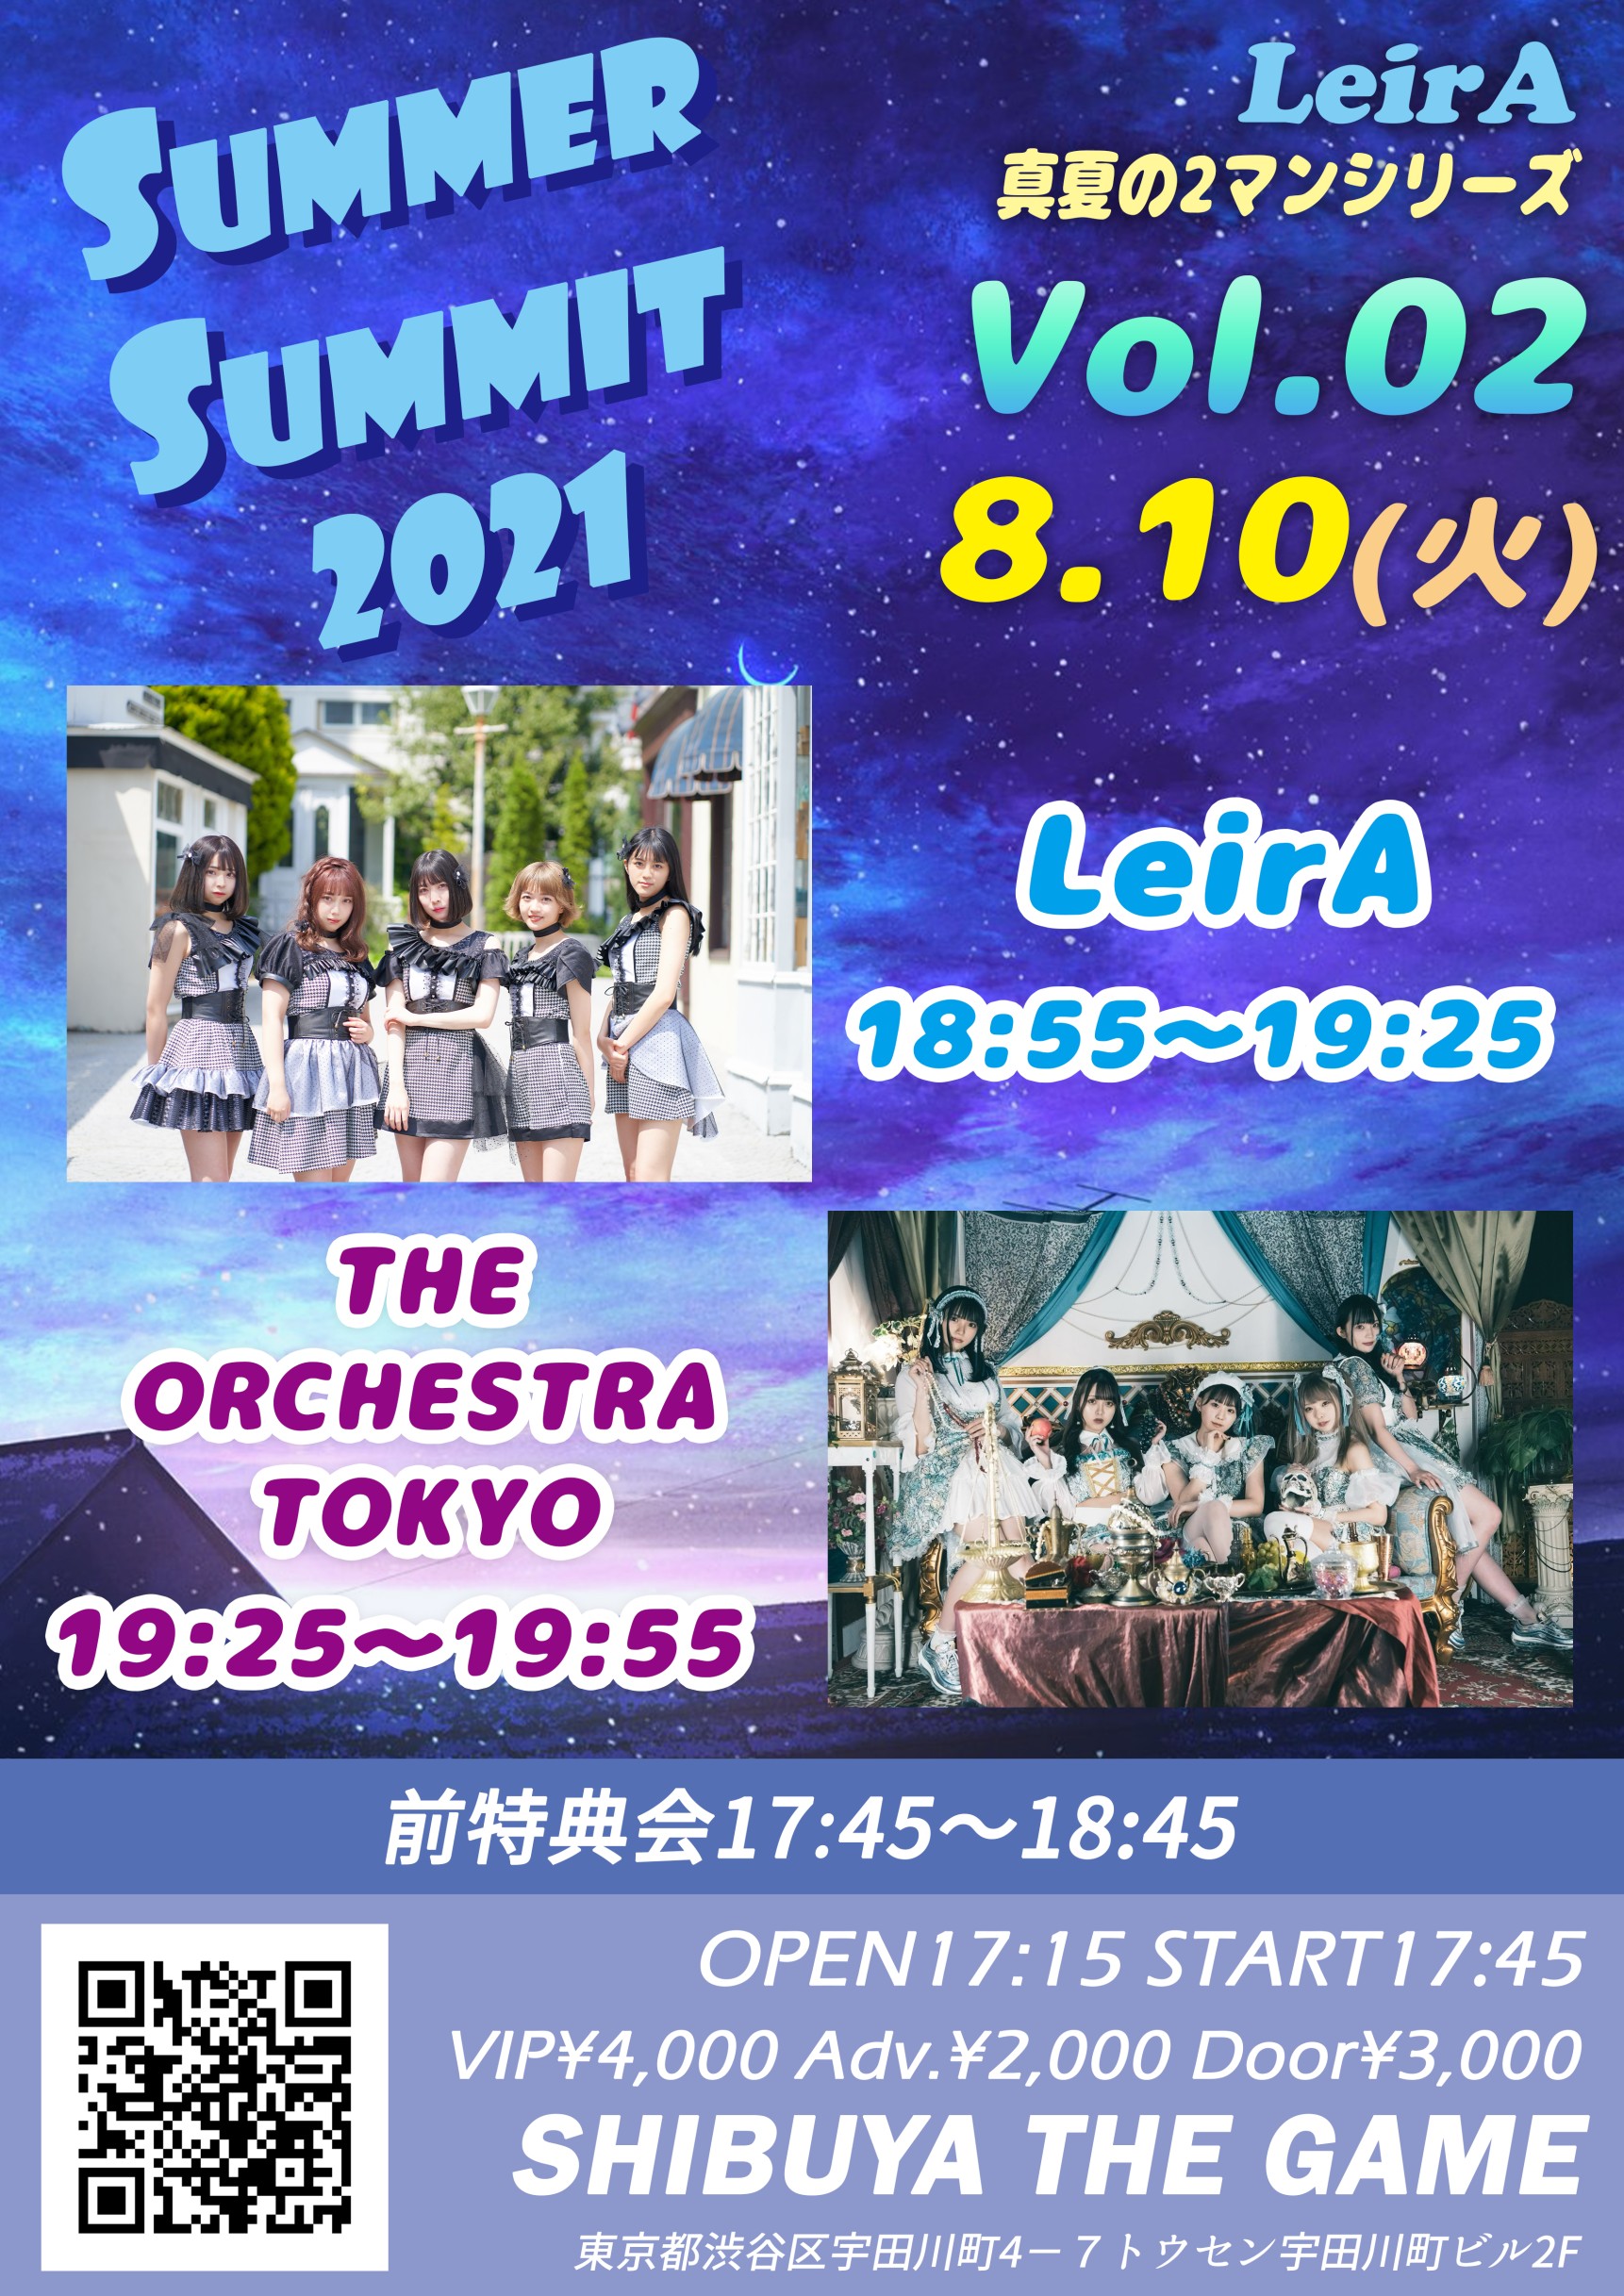 8/10(火) LeirA 真夏の2マンシリーズ「サマーサミット2021 Vol.02」